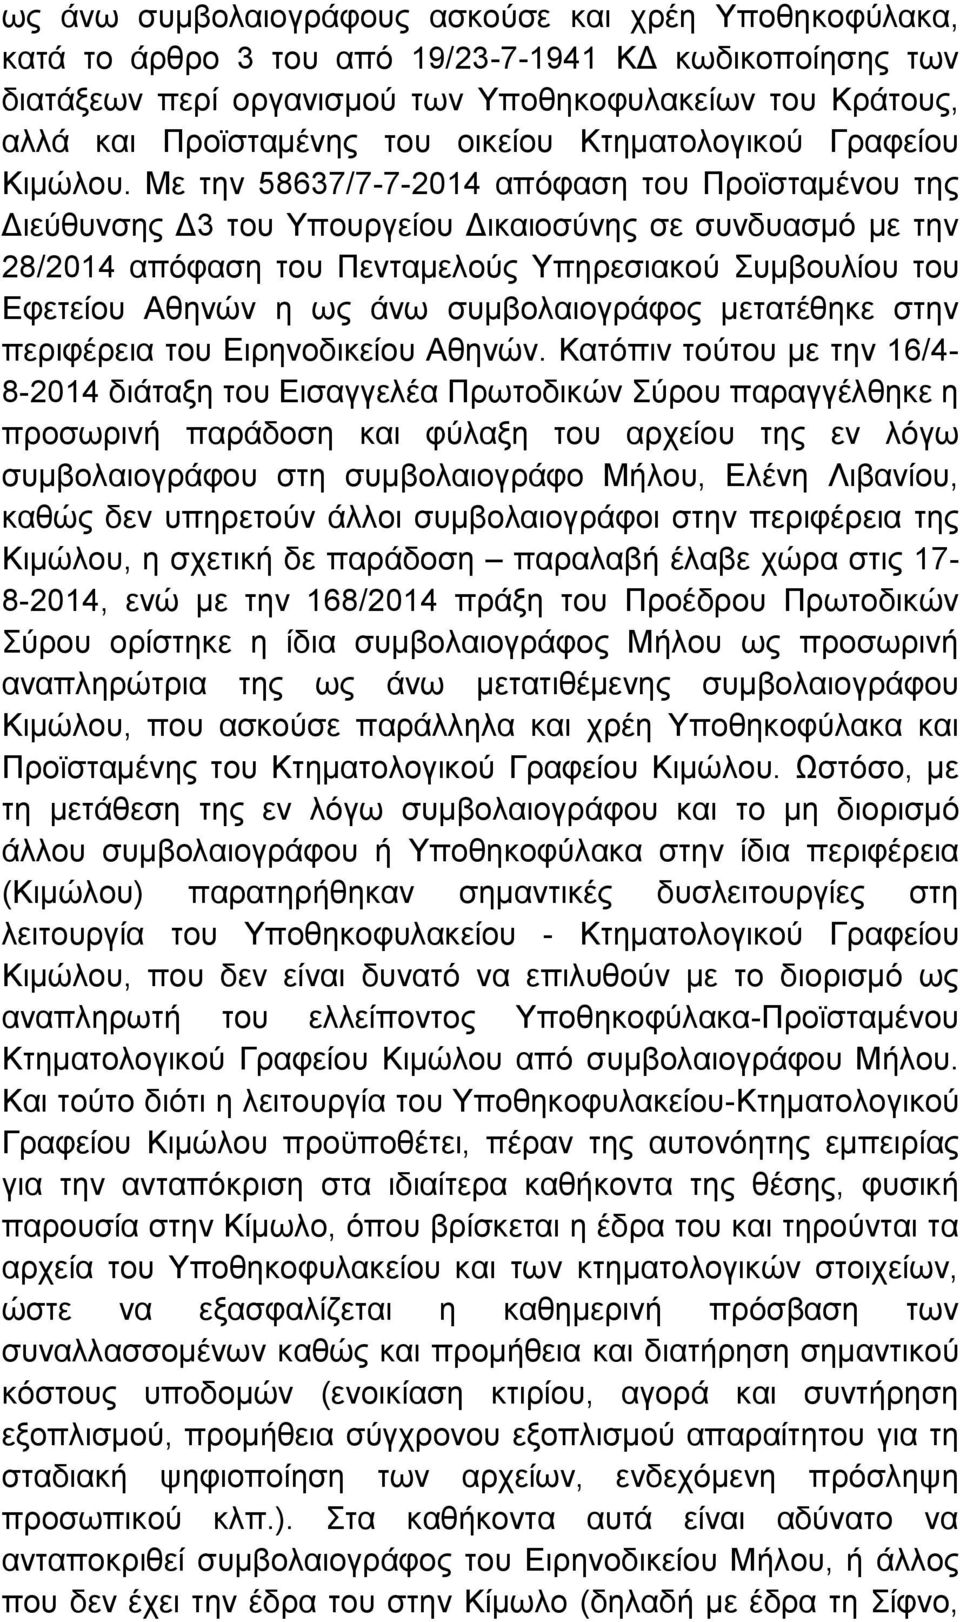 Με την 58637/7-7-2014 απόφαση του Προϊσταμένου της Διεύθυνσης Δ3 του Υπουργείου Δικαιοσύνης σε συνδυασμό με την 28/2014 απόφαση του Πενταμελούς Υπηρεσιακού Συμβουλίου του Εφετείου Αθηνών η ως άνω